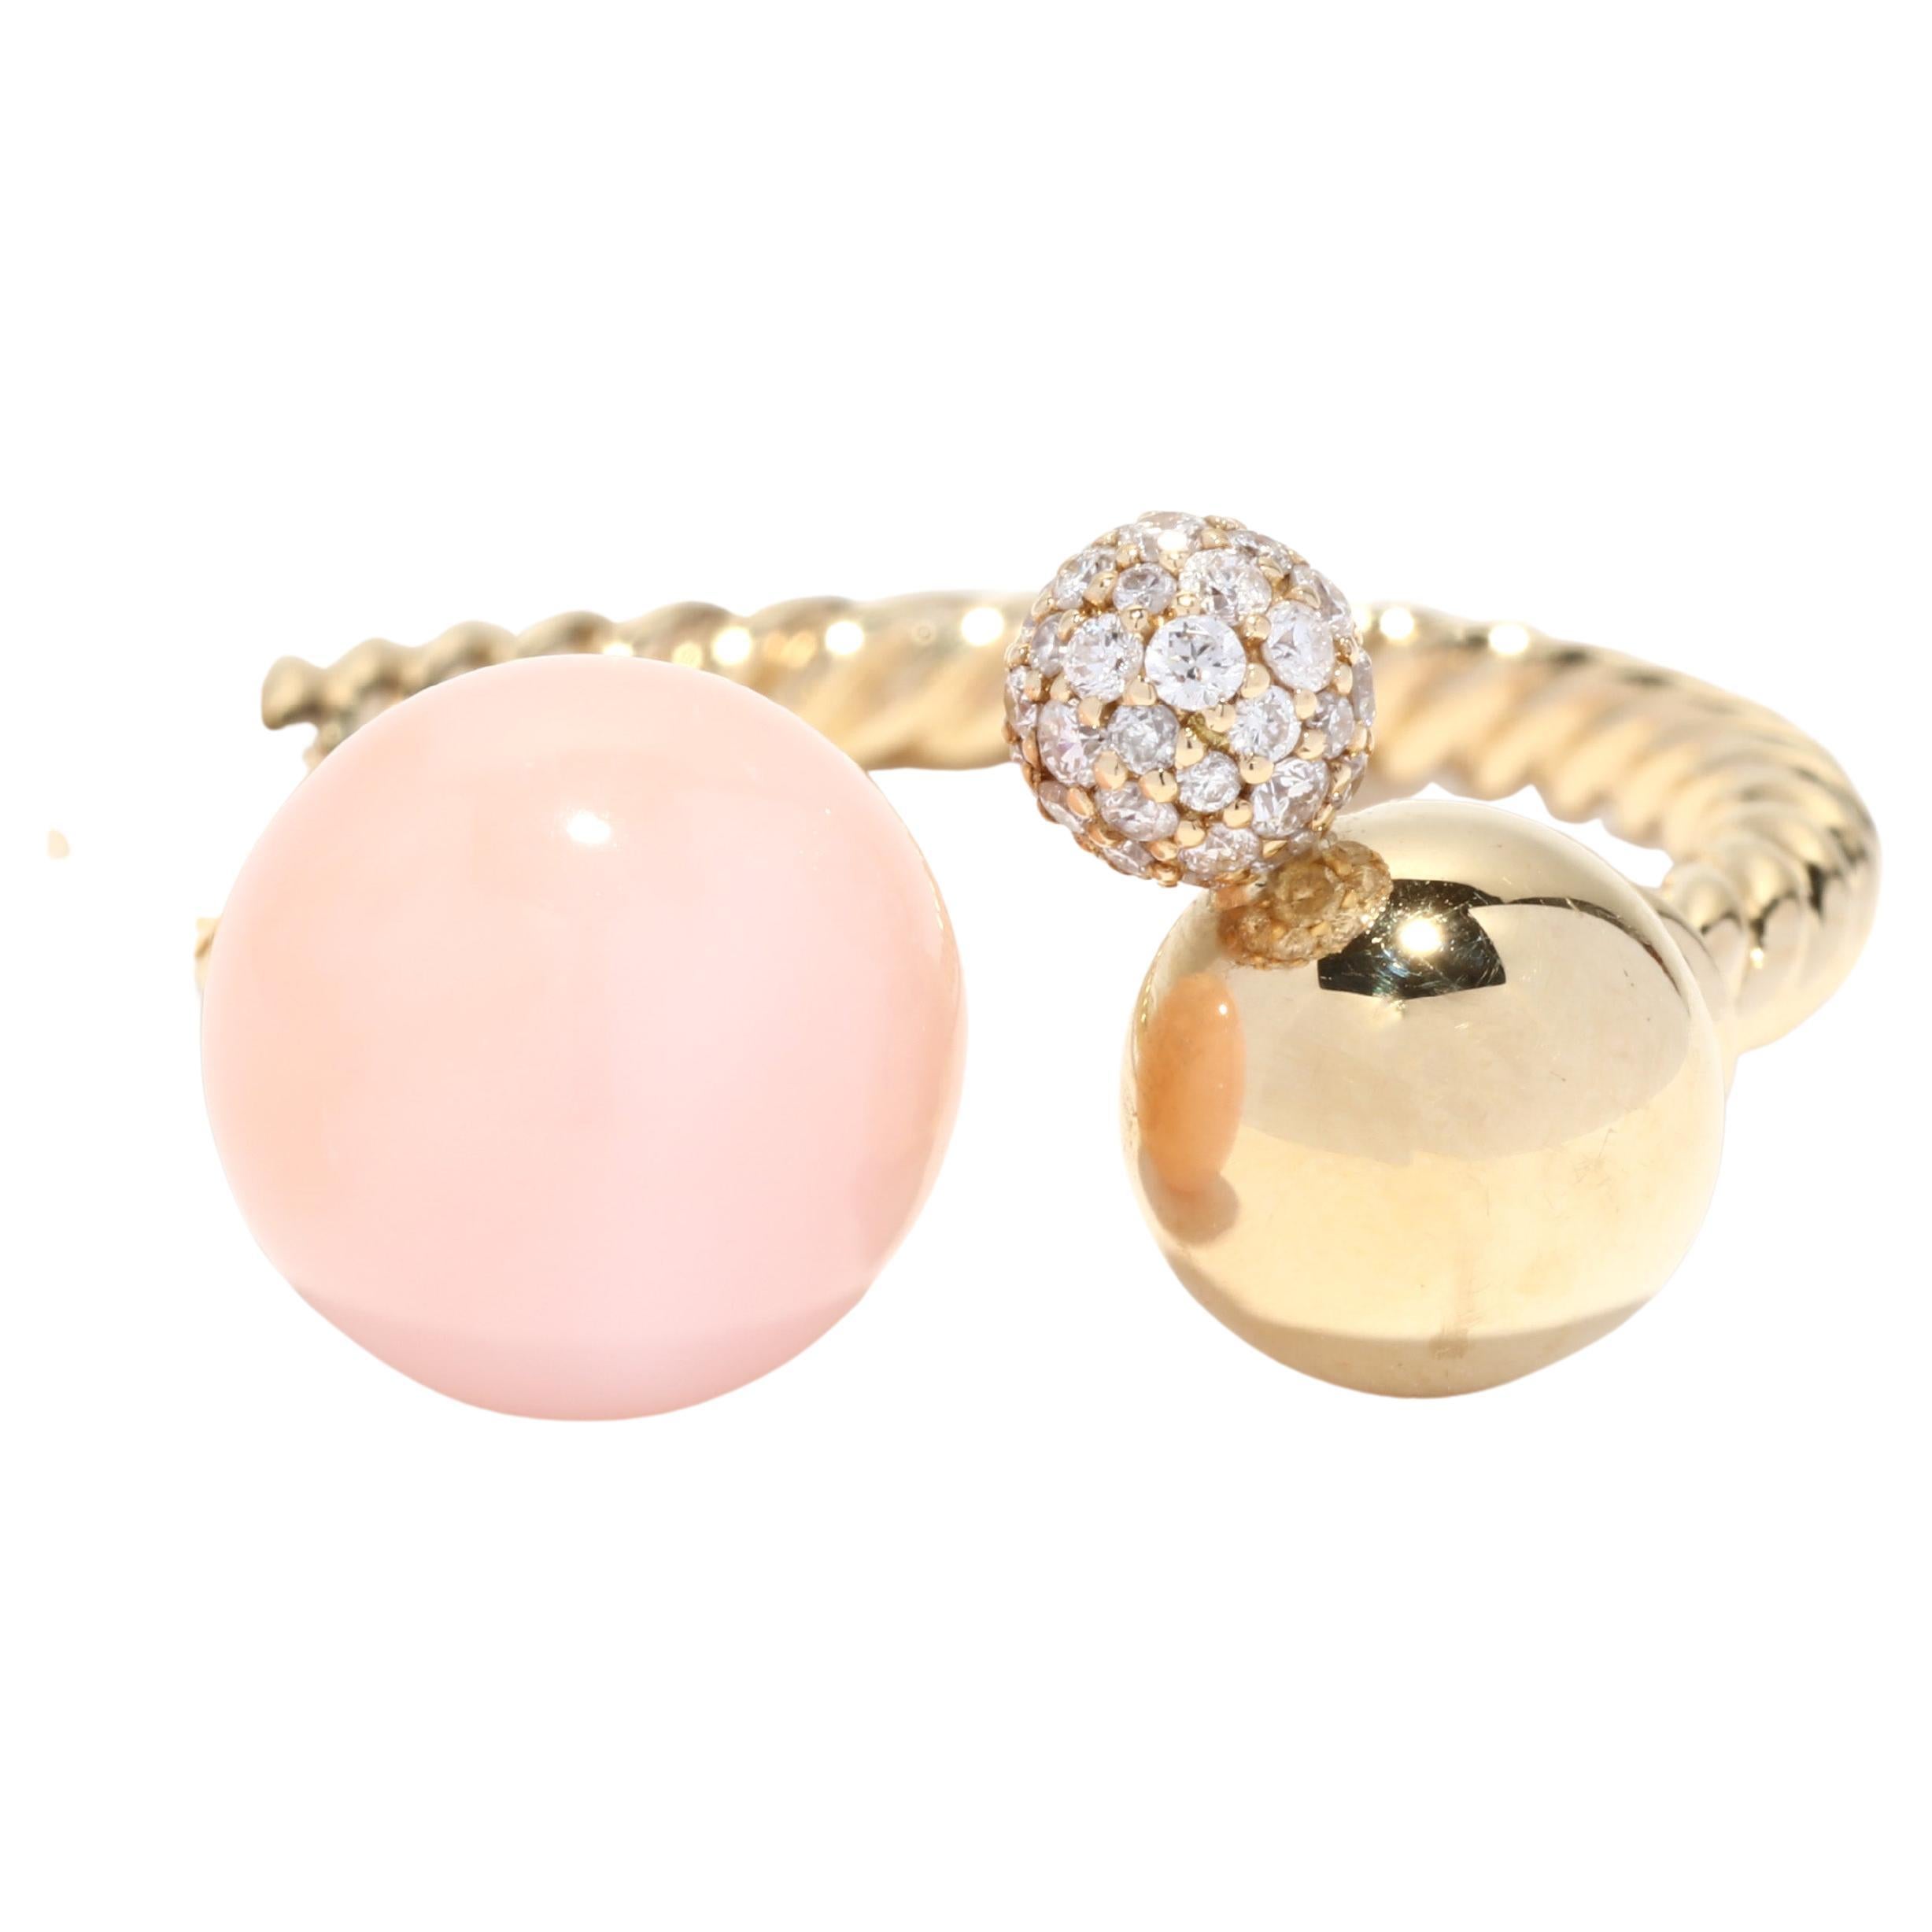 David Yurman Diamond Pink Opal Solari Ring, 18K Yellow Gold, Ring Size 8 - 8.5